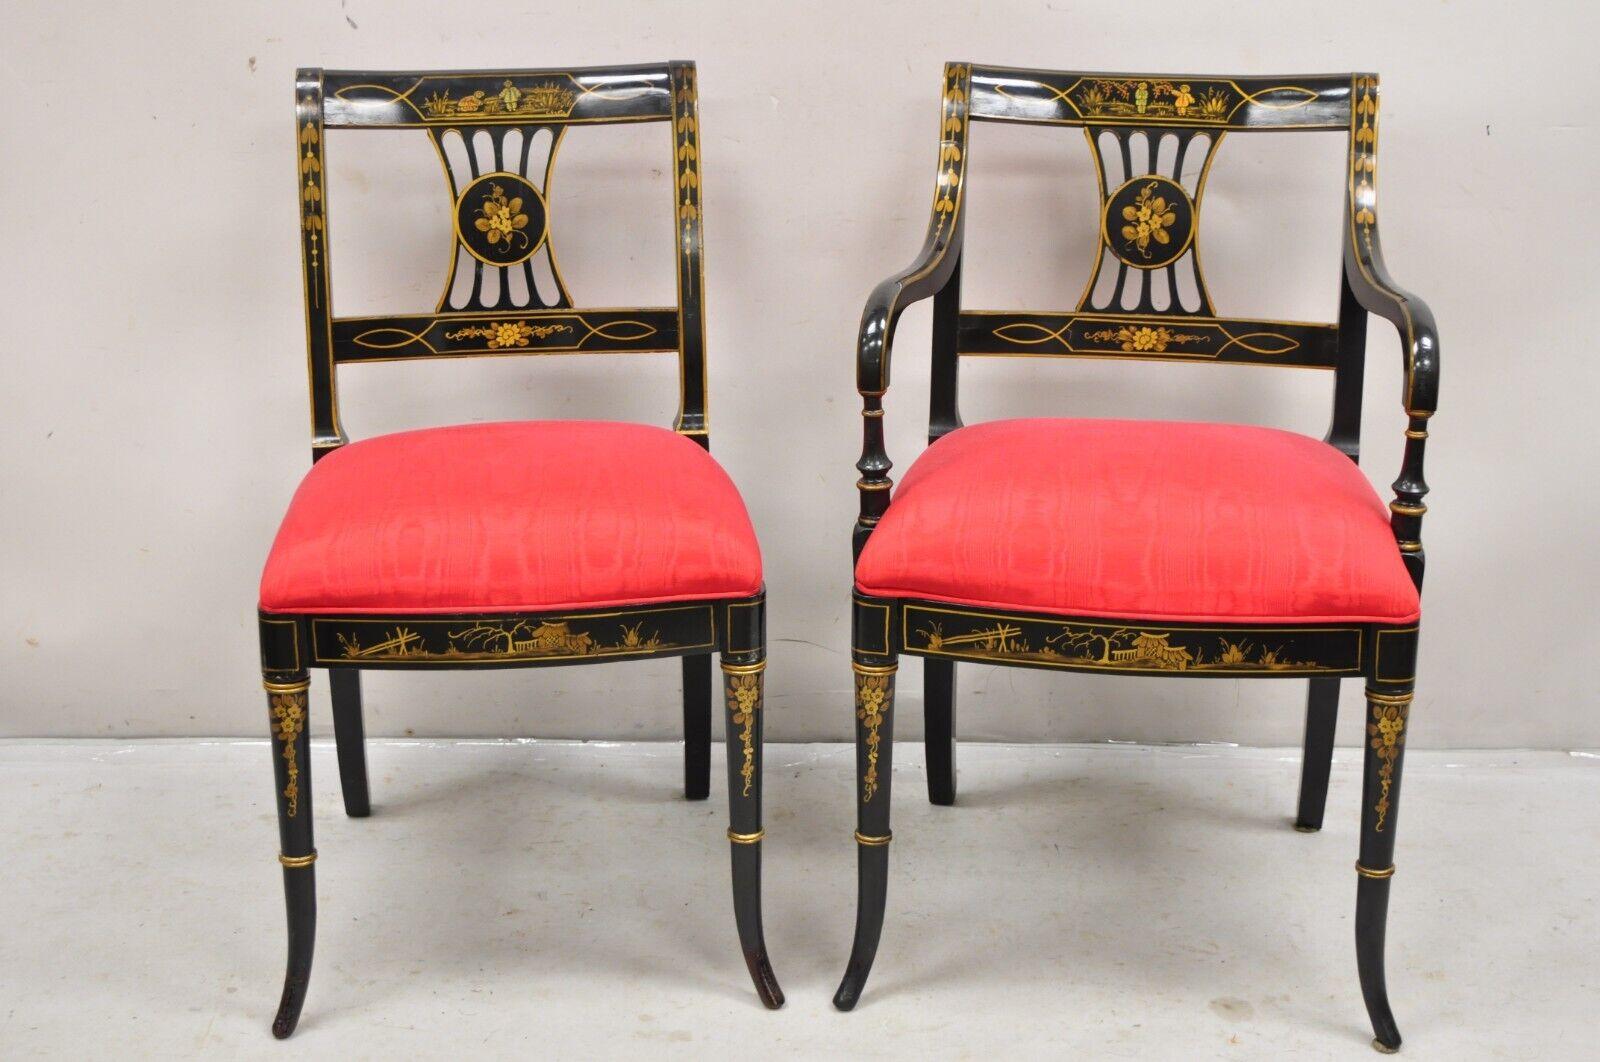 Ensemble de 6 chaises de salle à manger vintage Chinoiserie, style Régence anglaise, peintes à la main en noir. On pense qu'il s'agit d'un meuble de l'Union National Furniture Co. L'ensemble comprend 2 fauteuils, 4 chaises d'appoint, détails peints